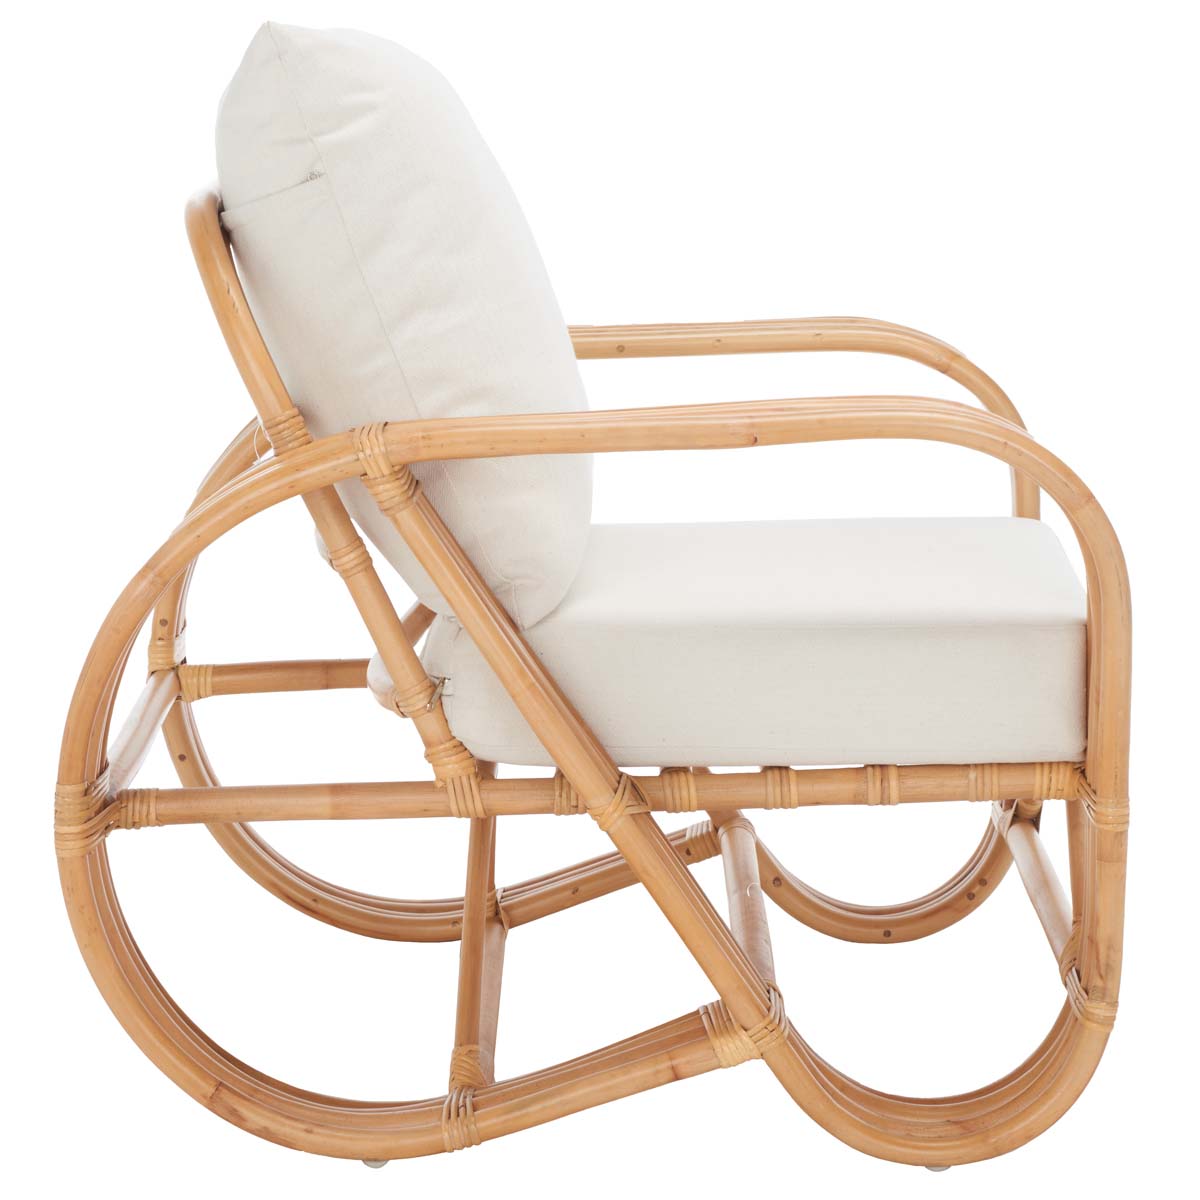 Safavieh Beia Accent Chair , ACH6521 - Natural / White